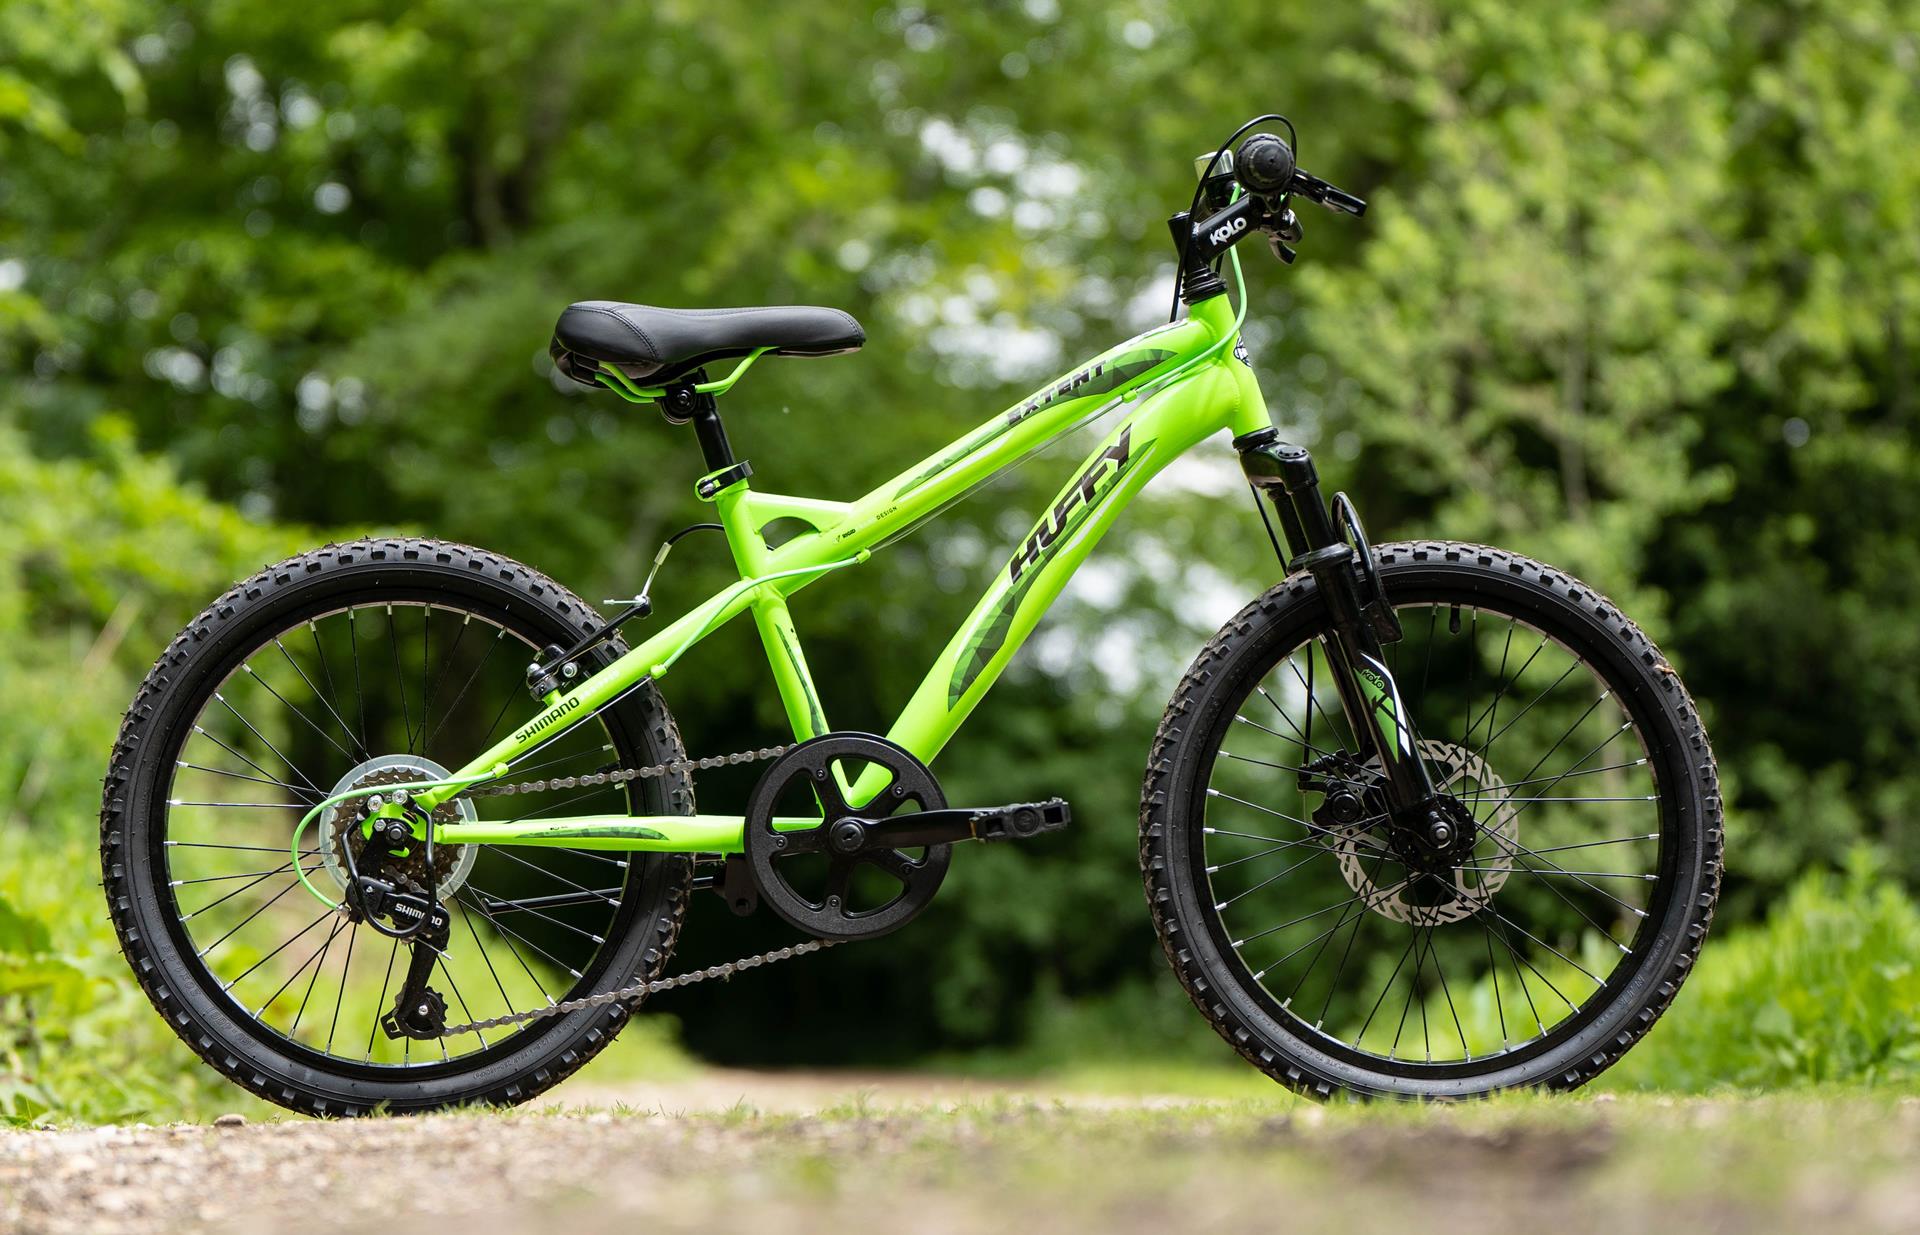 Huffy Extent 20" Горный велосипед, Shimano TZ 31, Зеленый 